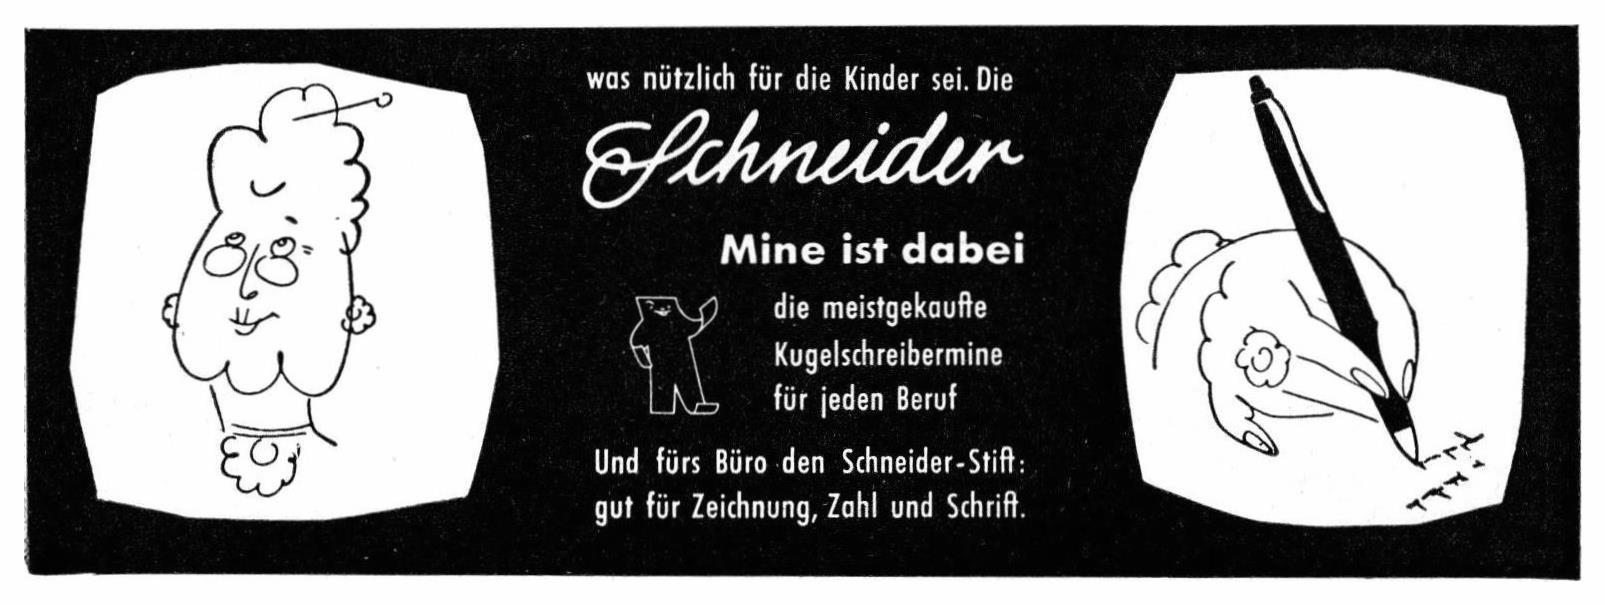 Schneider 1959 0.jpg